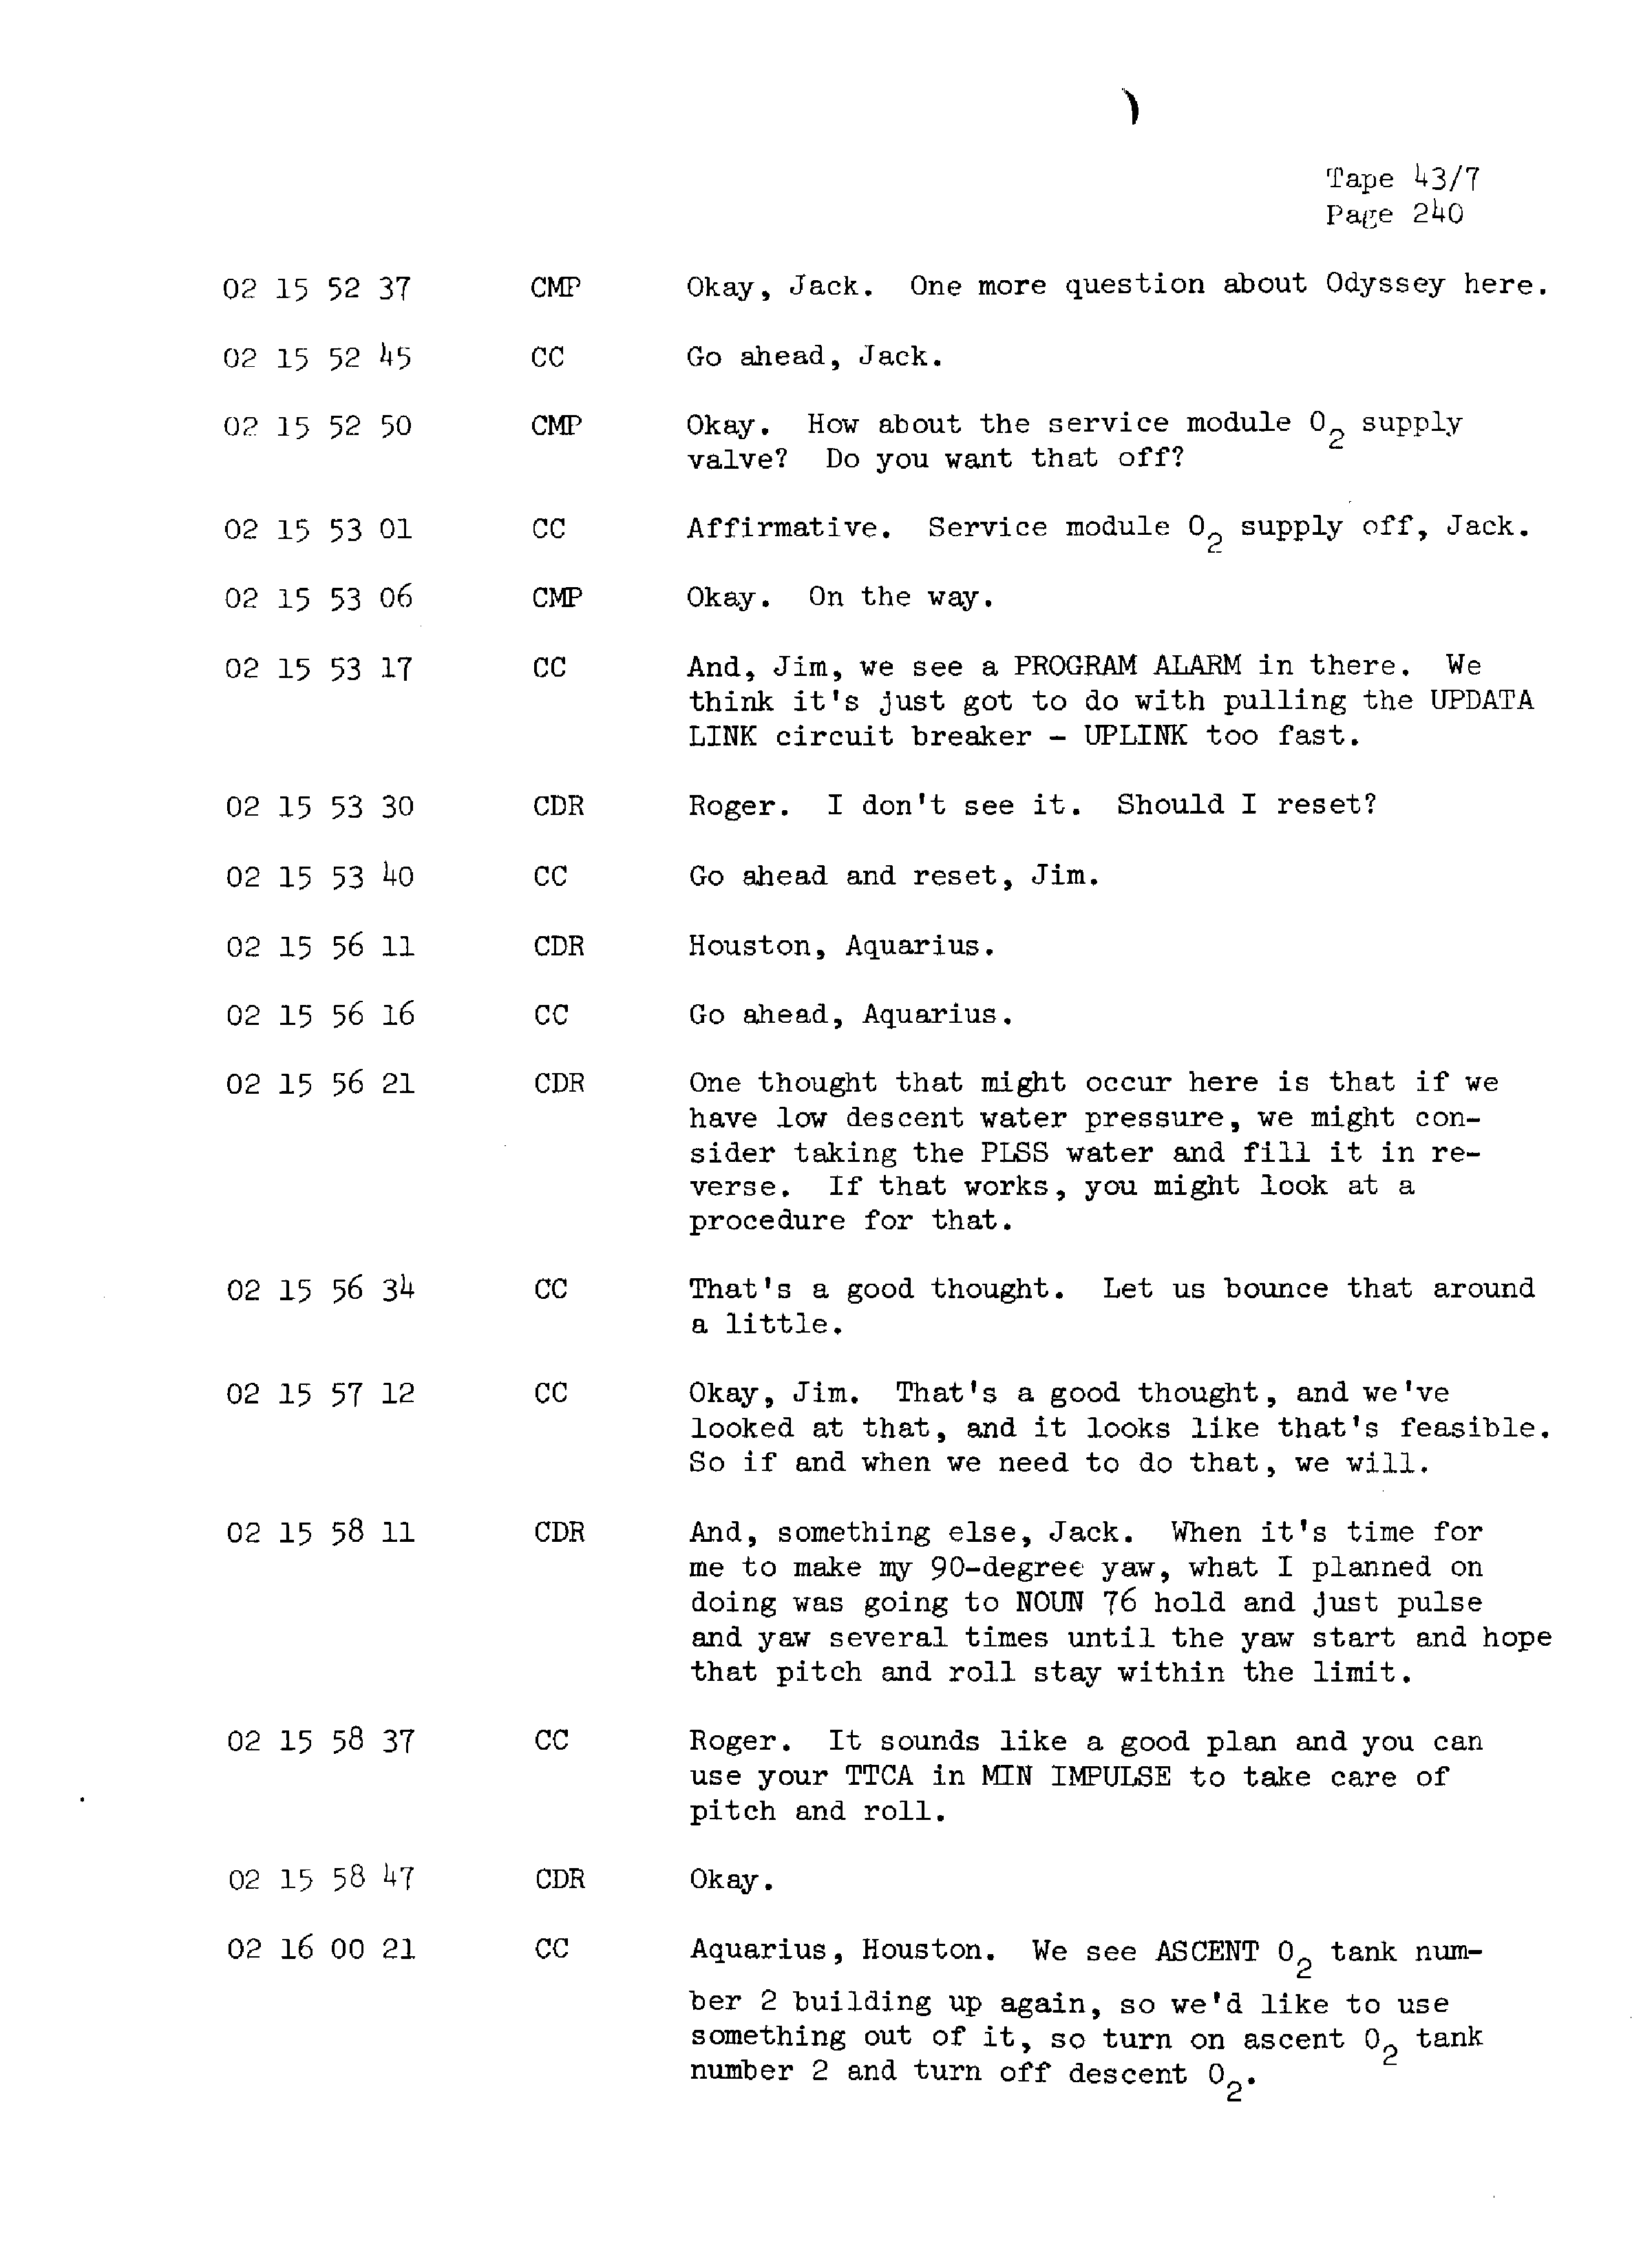 Page 247 of Apollo 13’s original transcript